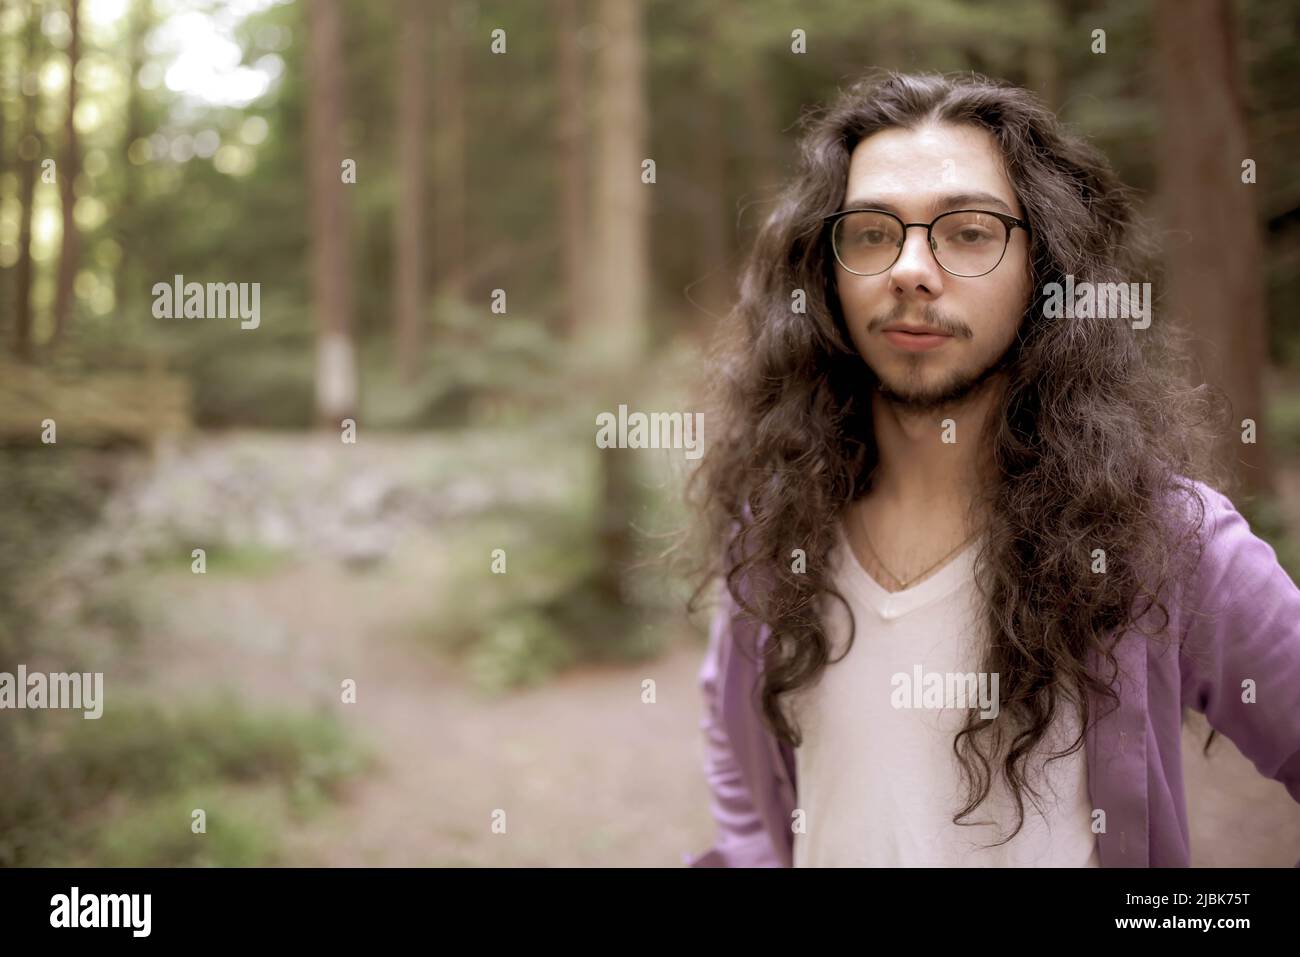 Ein hübscher junger Mann mit langen Haaren steht abseits der Mitte im Wald und blickt direkt auf die Kamera. Unfokussierte Hintergrundkopie. Stockfoto